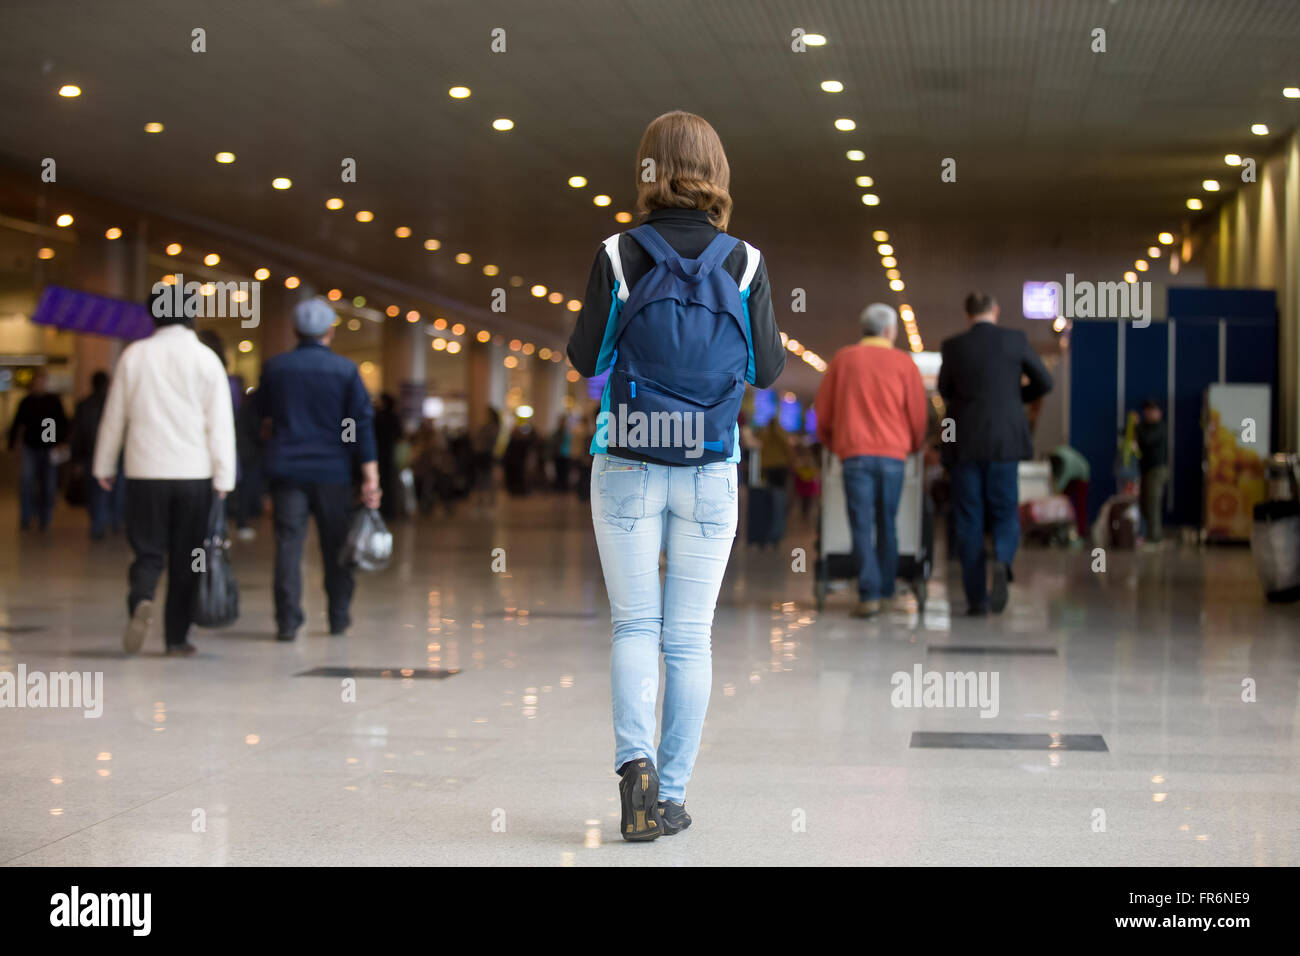 Junge Frau in der 20er Jahre mit Rucksack wandern im Flughafen-terminal, Jersey, Jeans und Turnschuhe, verschwommen Masse des Reisens pe Stockfoto